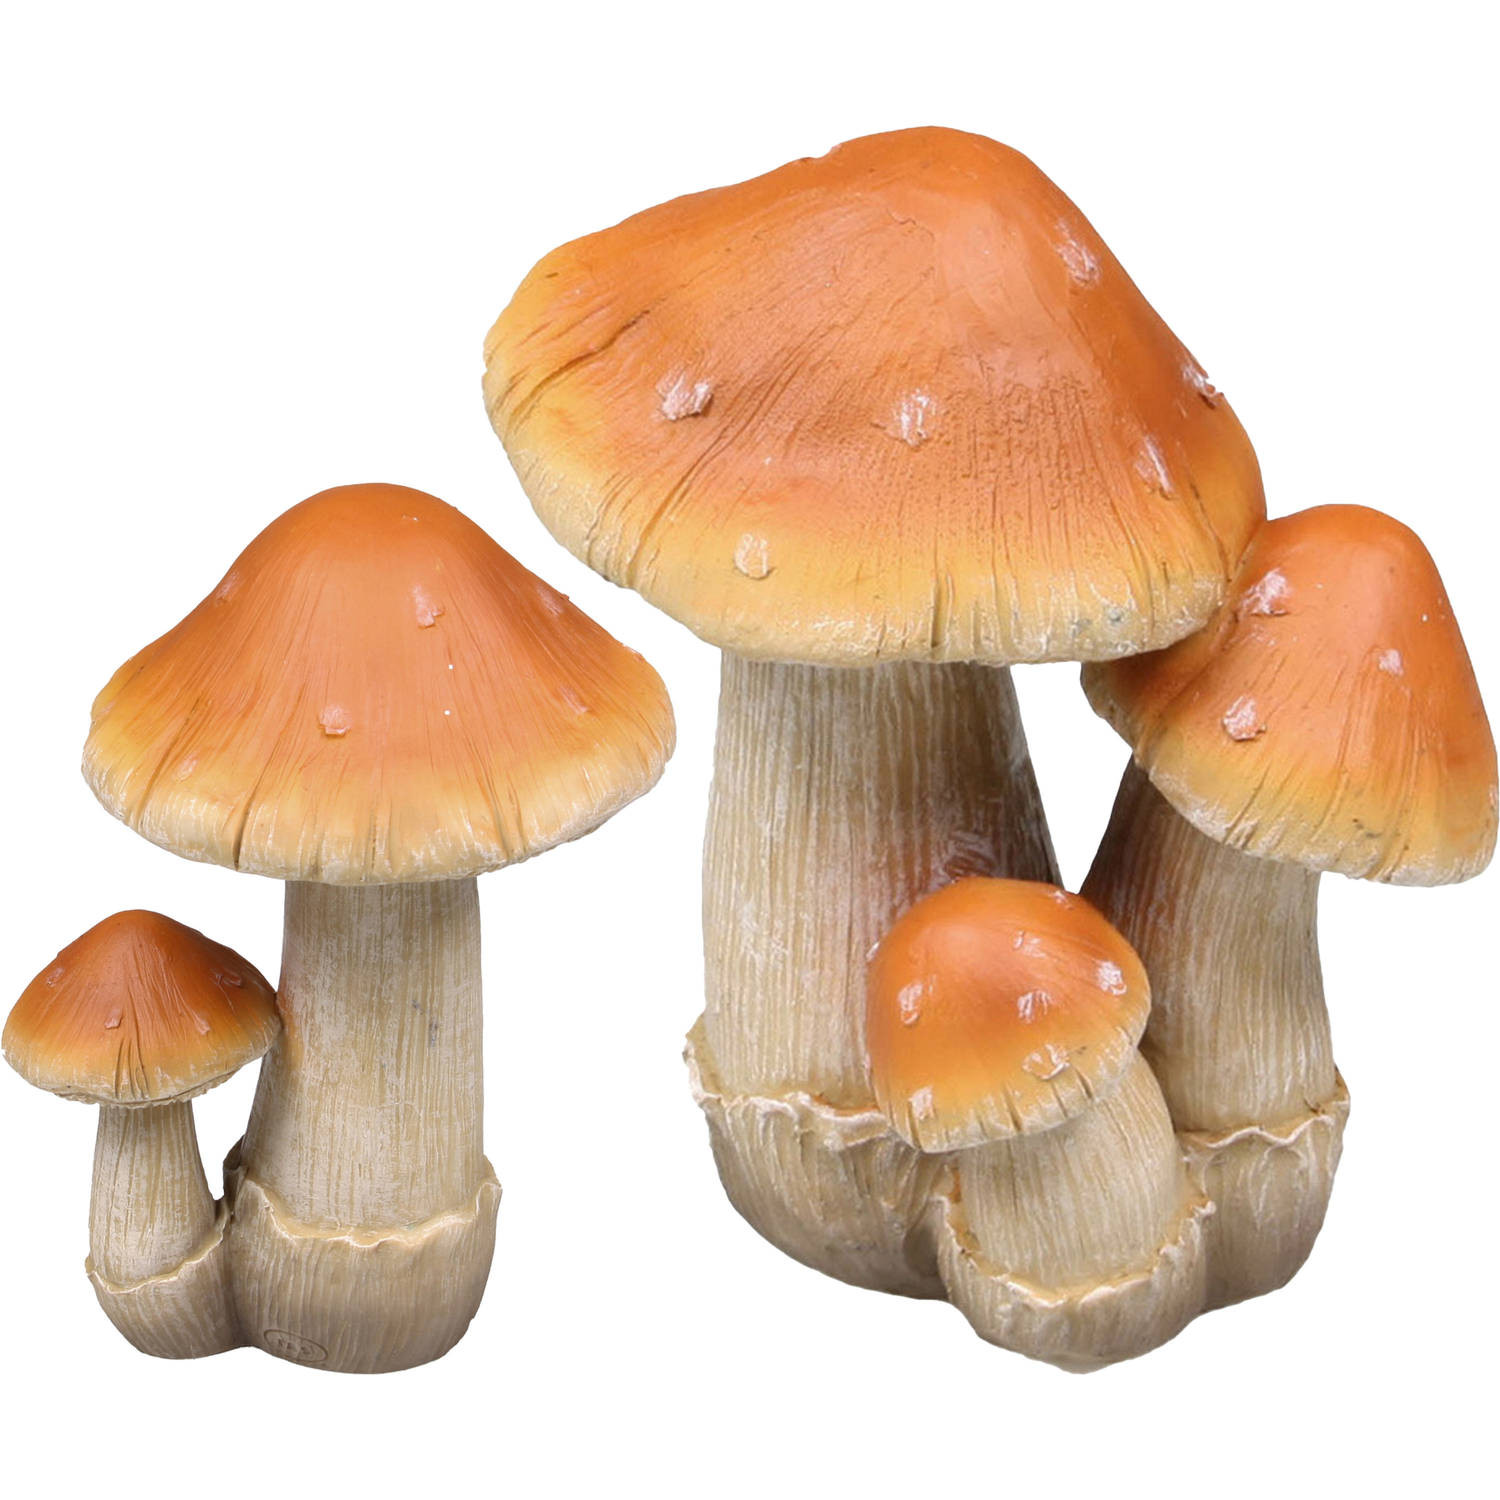 Decoratie paddenstoelen setje met 2x boleet paddenstoelen - herfst thema - Tuinbeelden